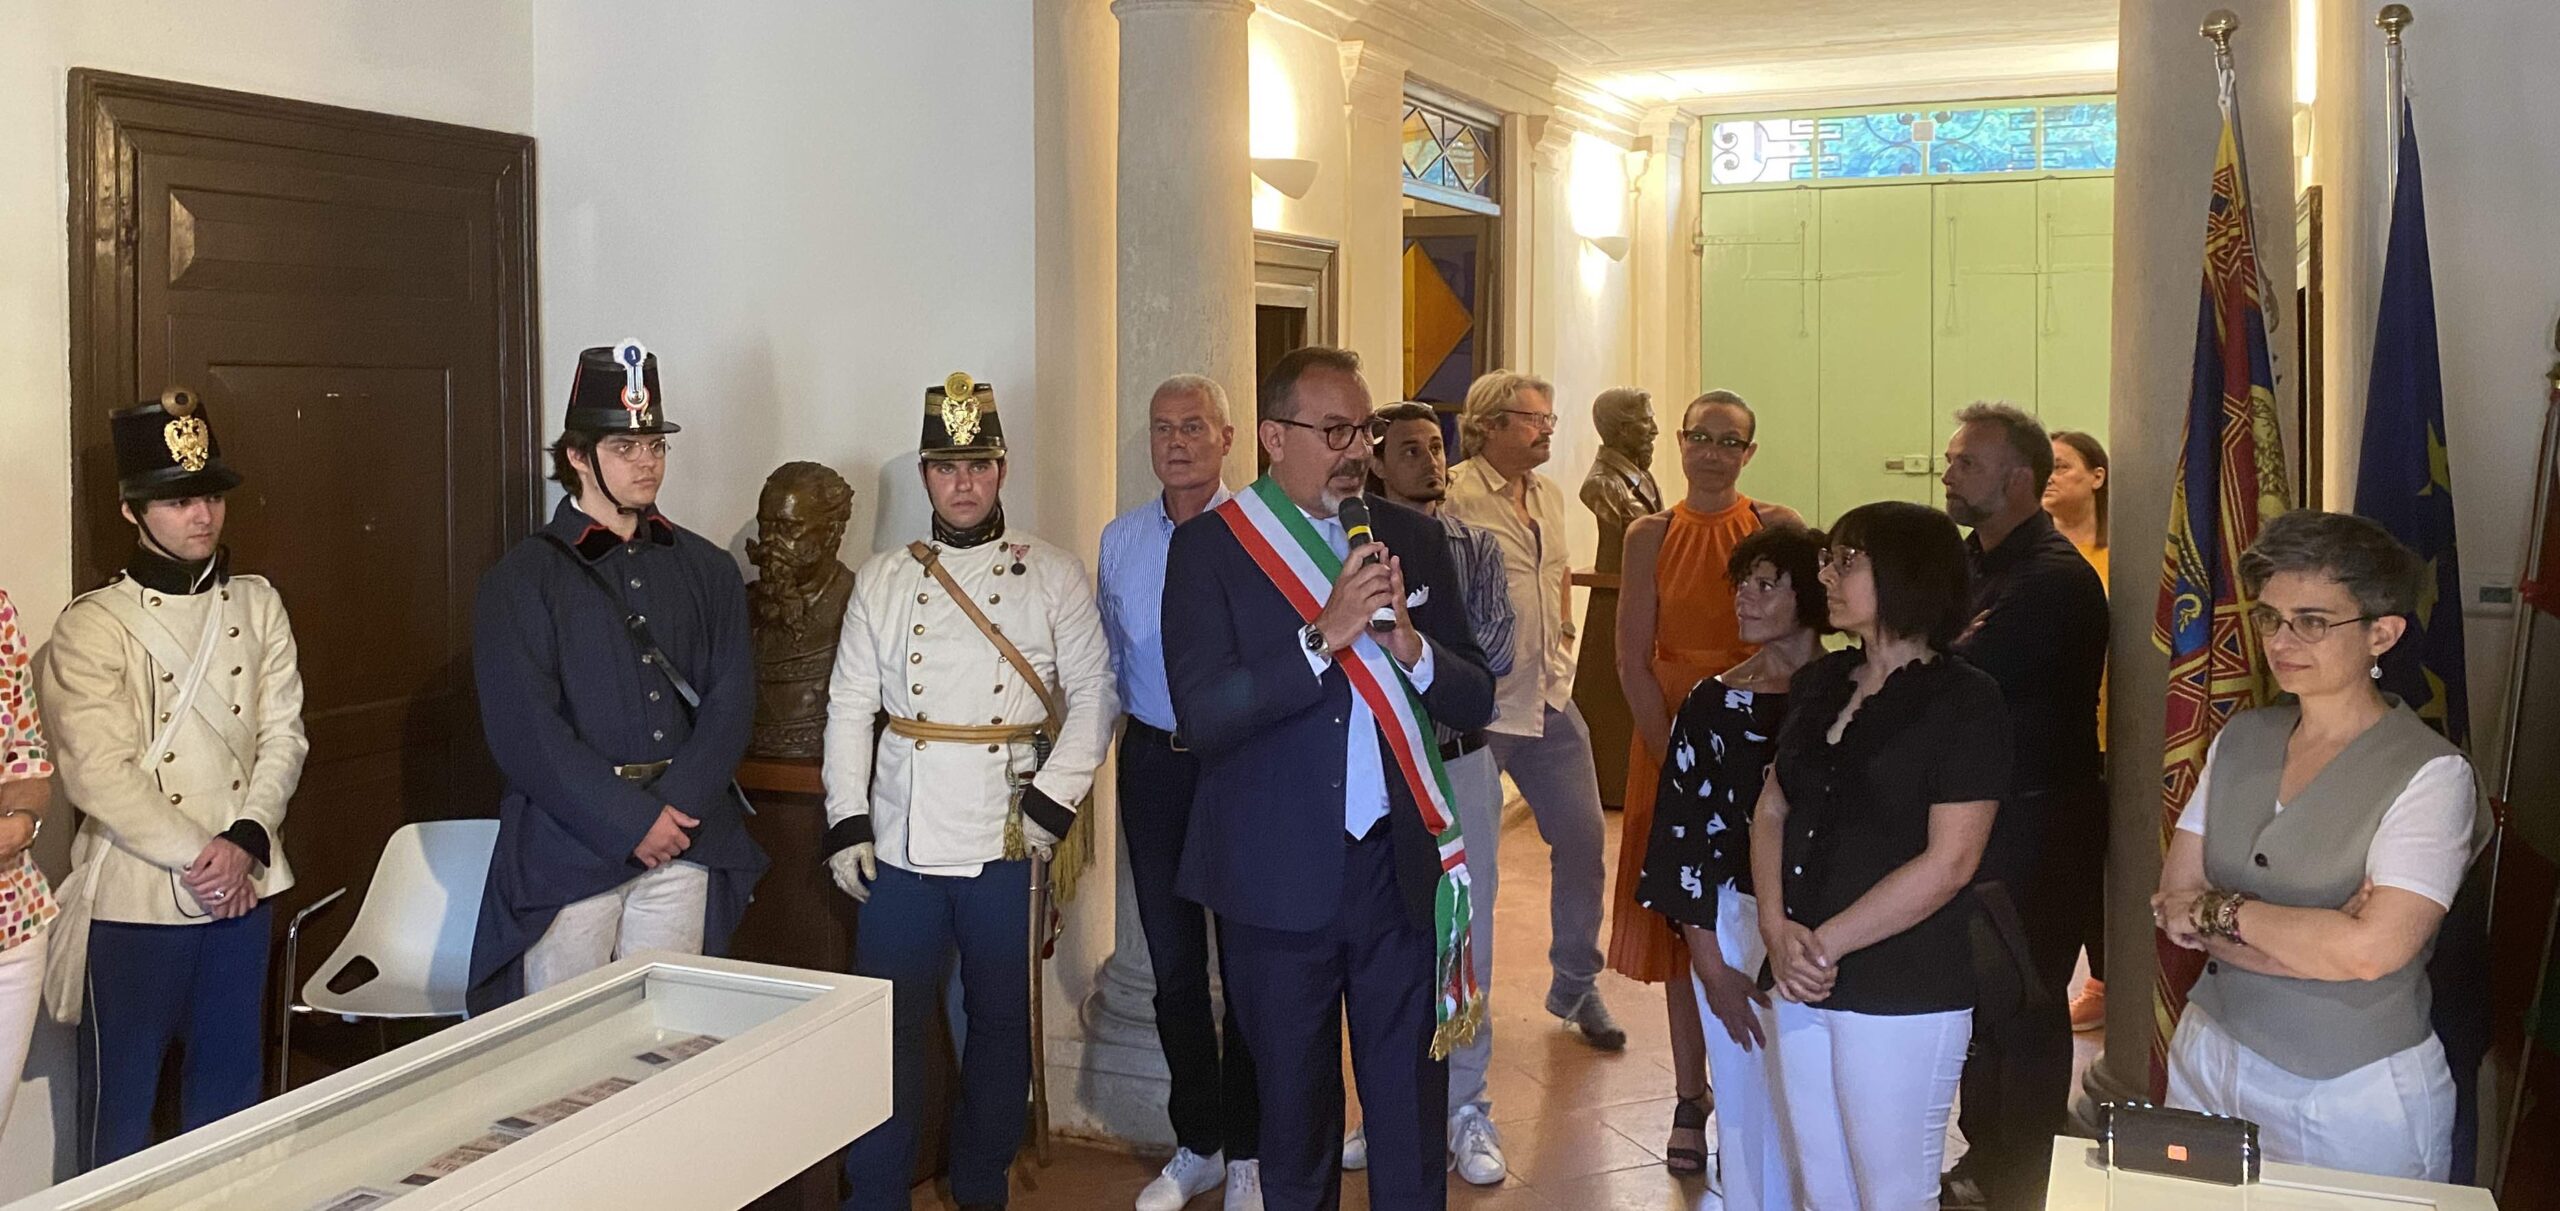 Il museo del Risorgimento di Palazzo Bottagisio parla ai giovani con video e Qr code. L’inaugurazione nell’anniversario della pace di Villafranca